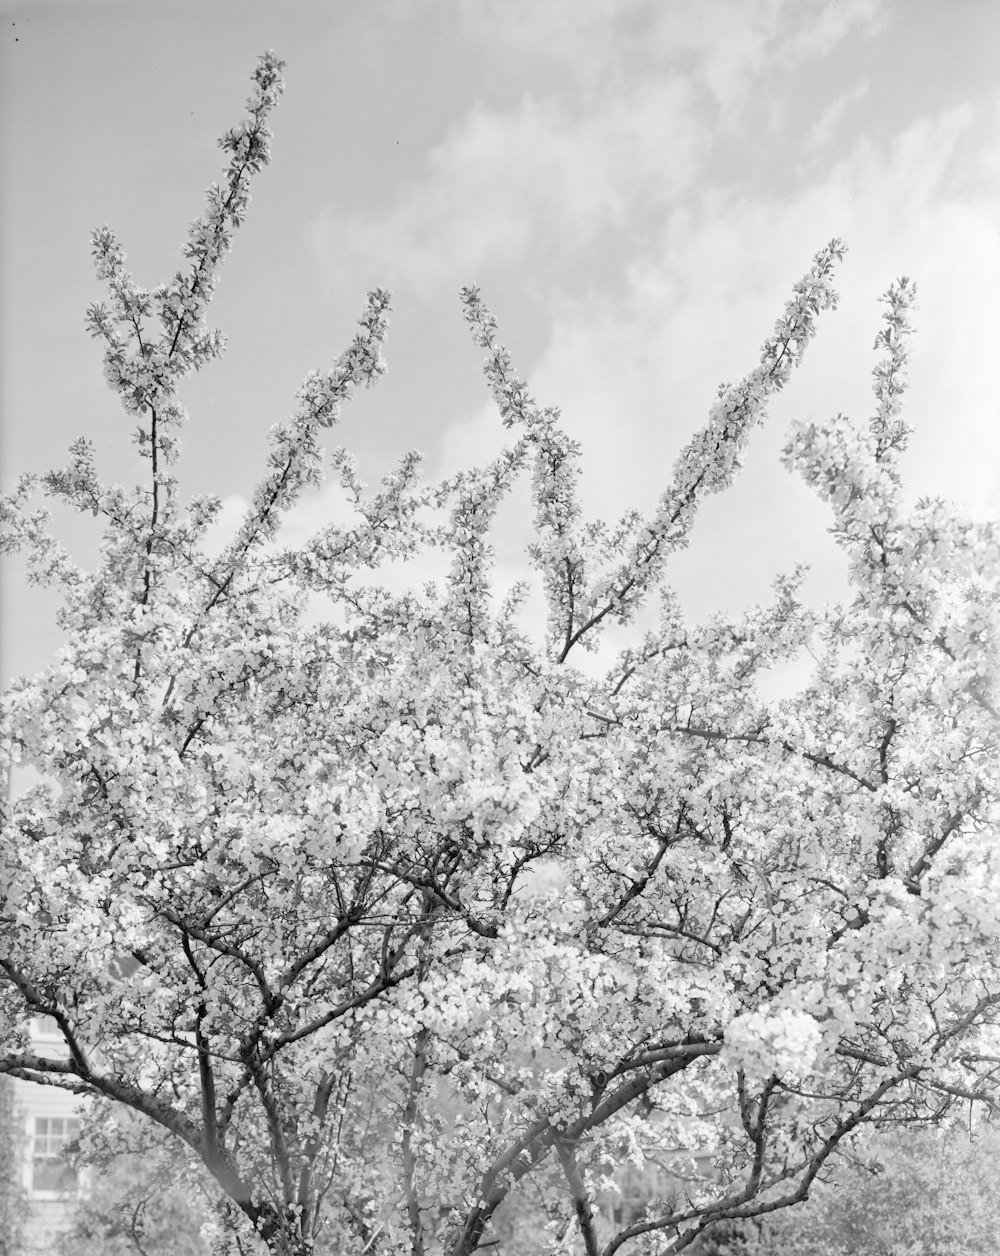 Photo en niveaux de gris de fleur de cerisier